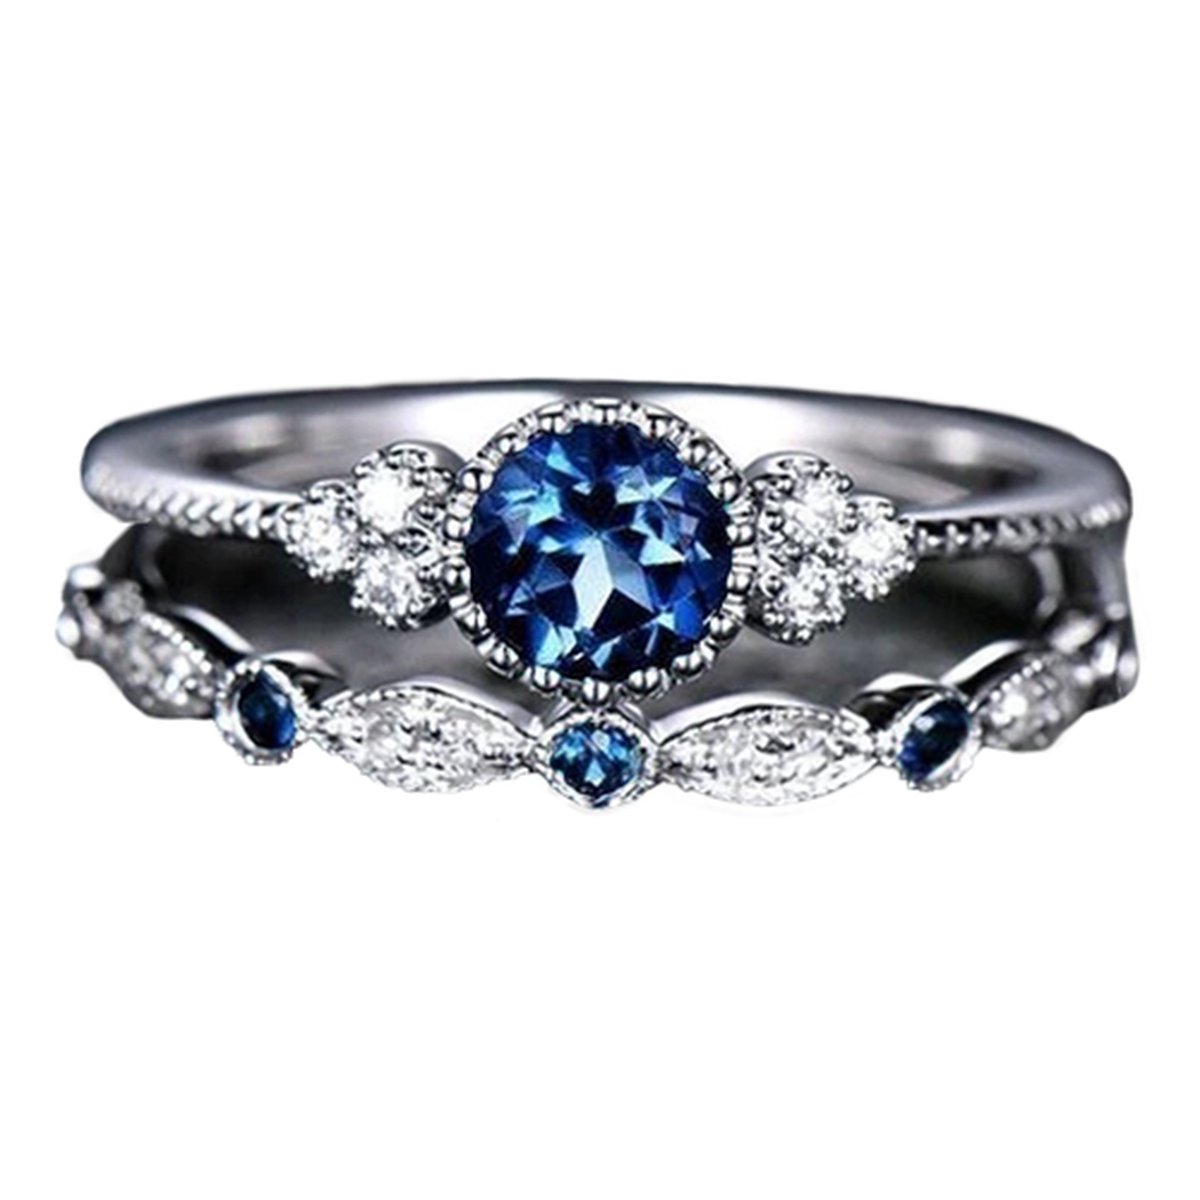 Ring blauwe steen (set) - Met edelsteen - Ring met steen dames - Ring maat 18 zilver kleurig staal - Maat 57 ring dames ringen set van 2 - Blauw